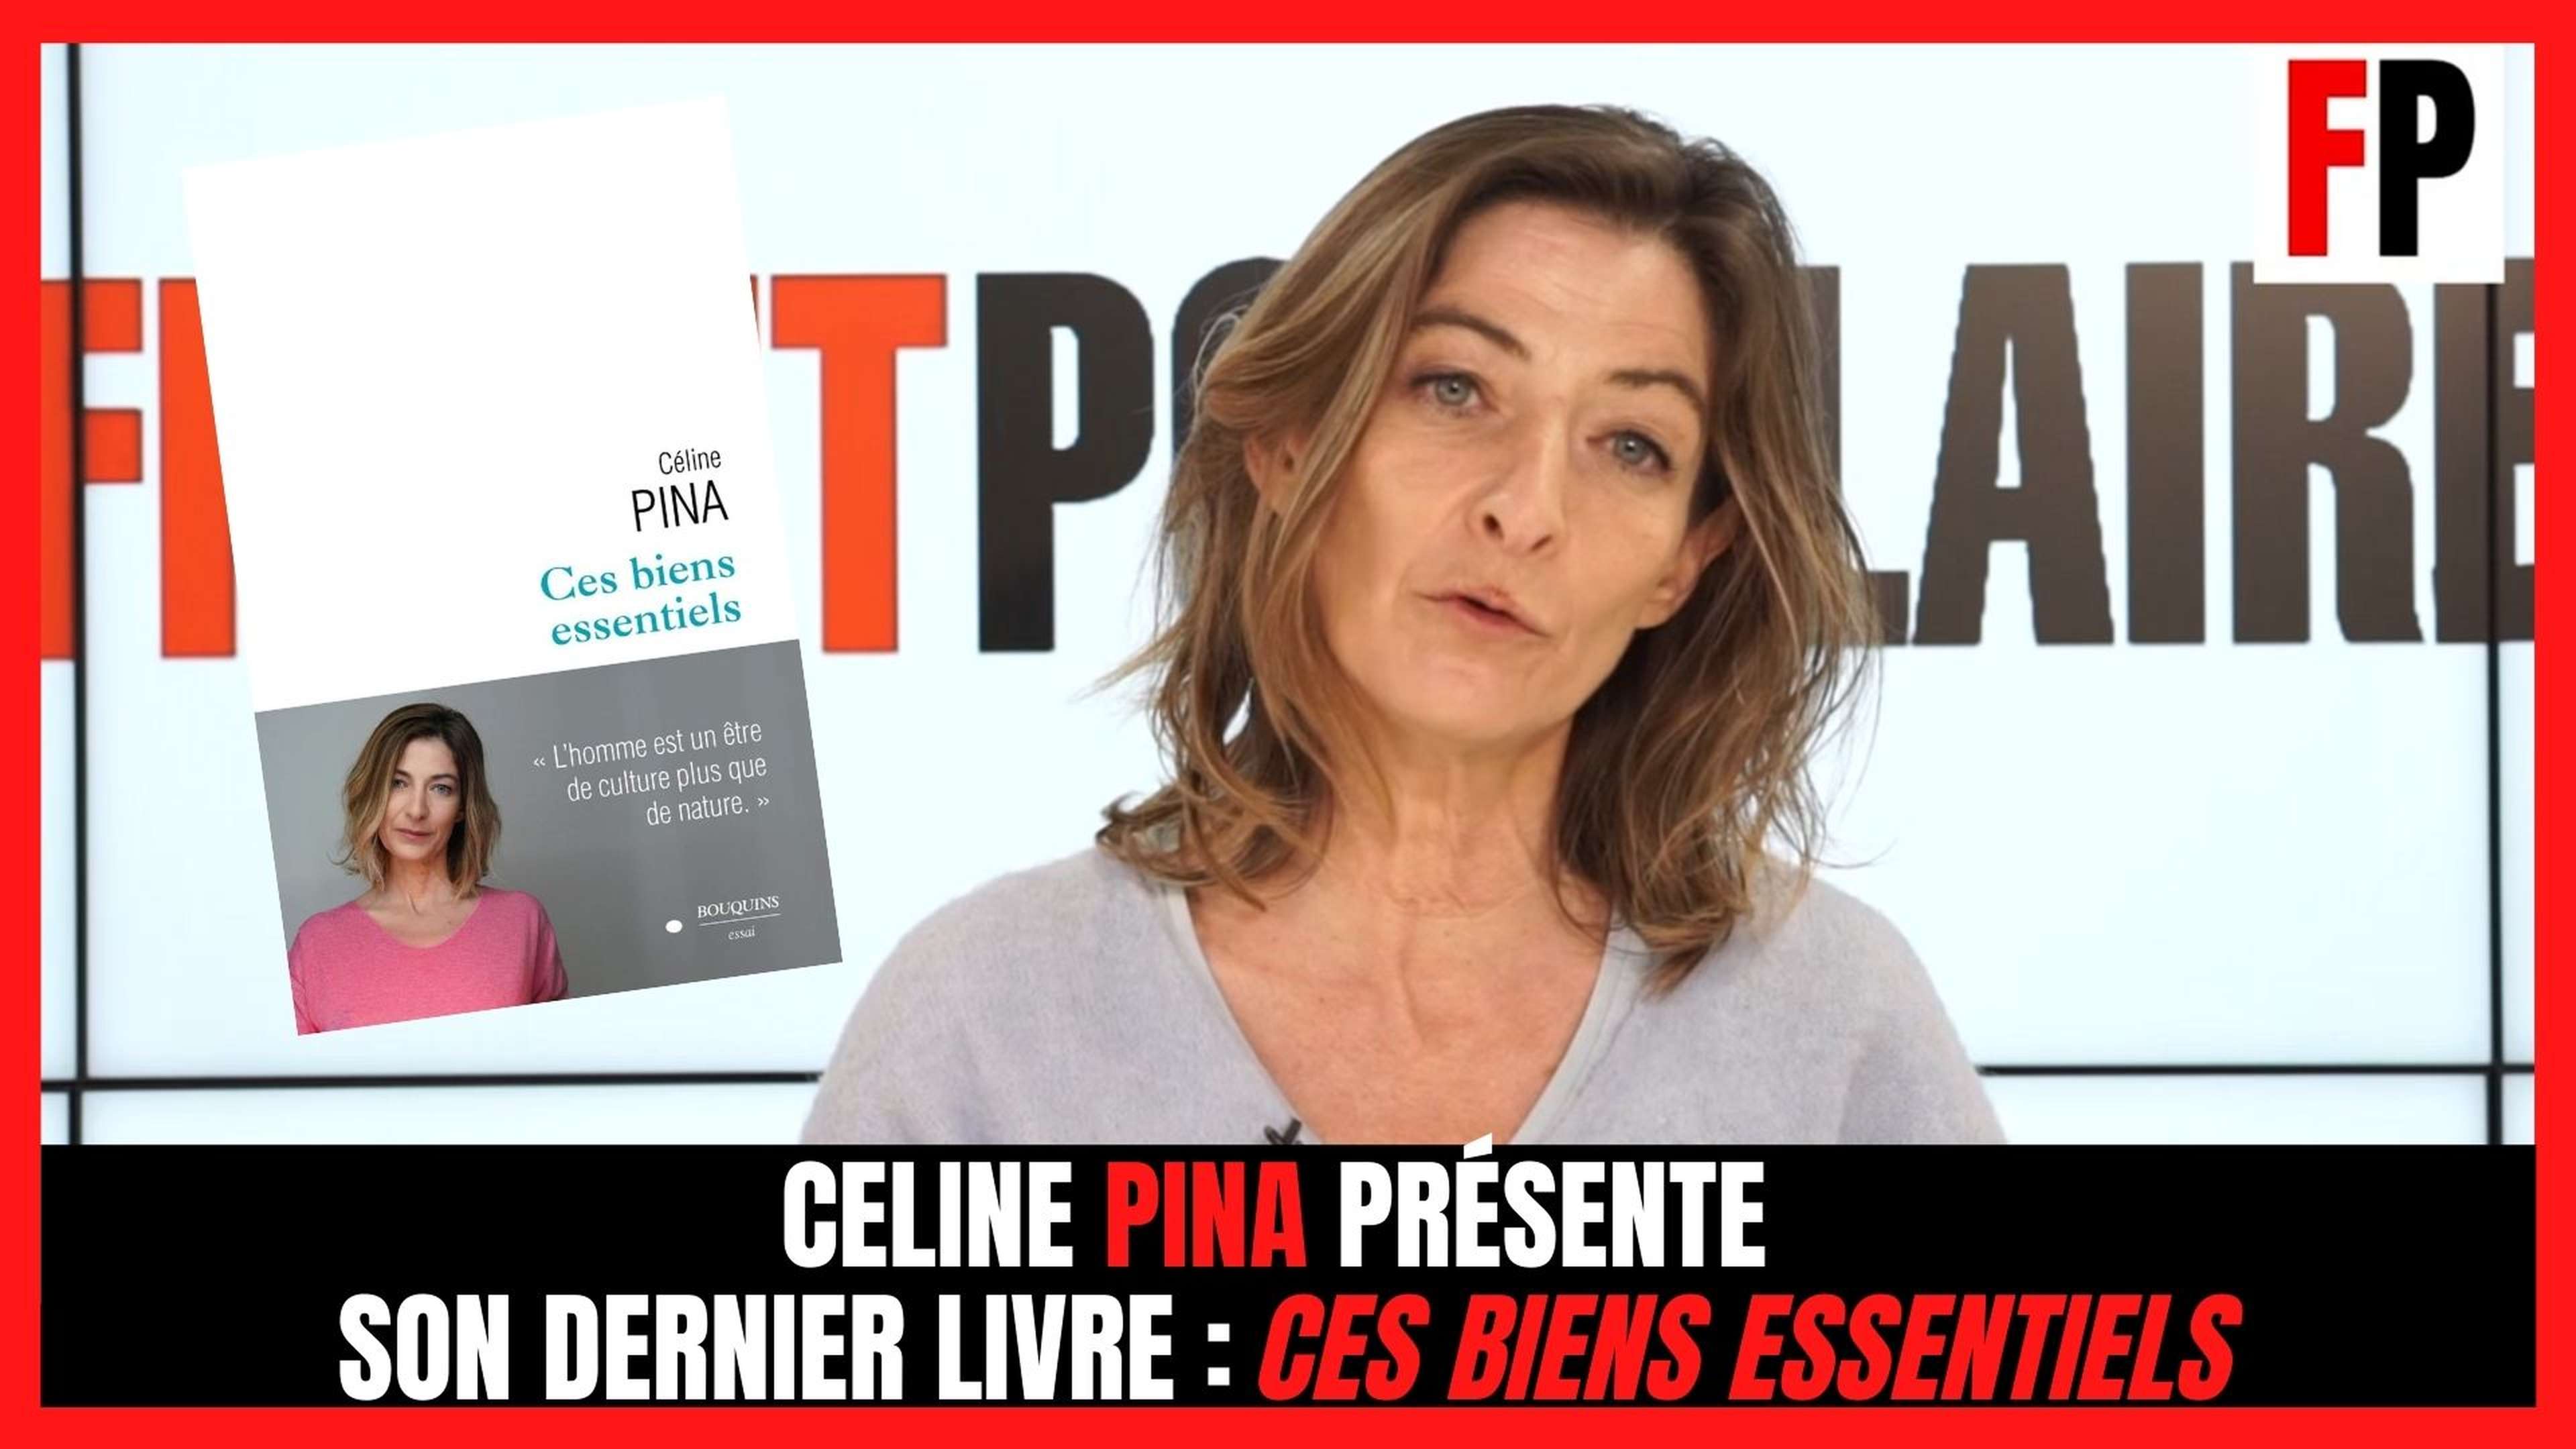 Céline Pina présente son dernier livre : "Ces biens essentiels"